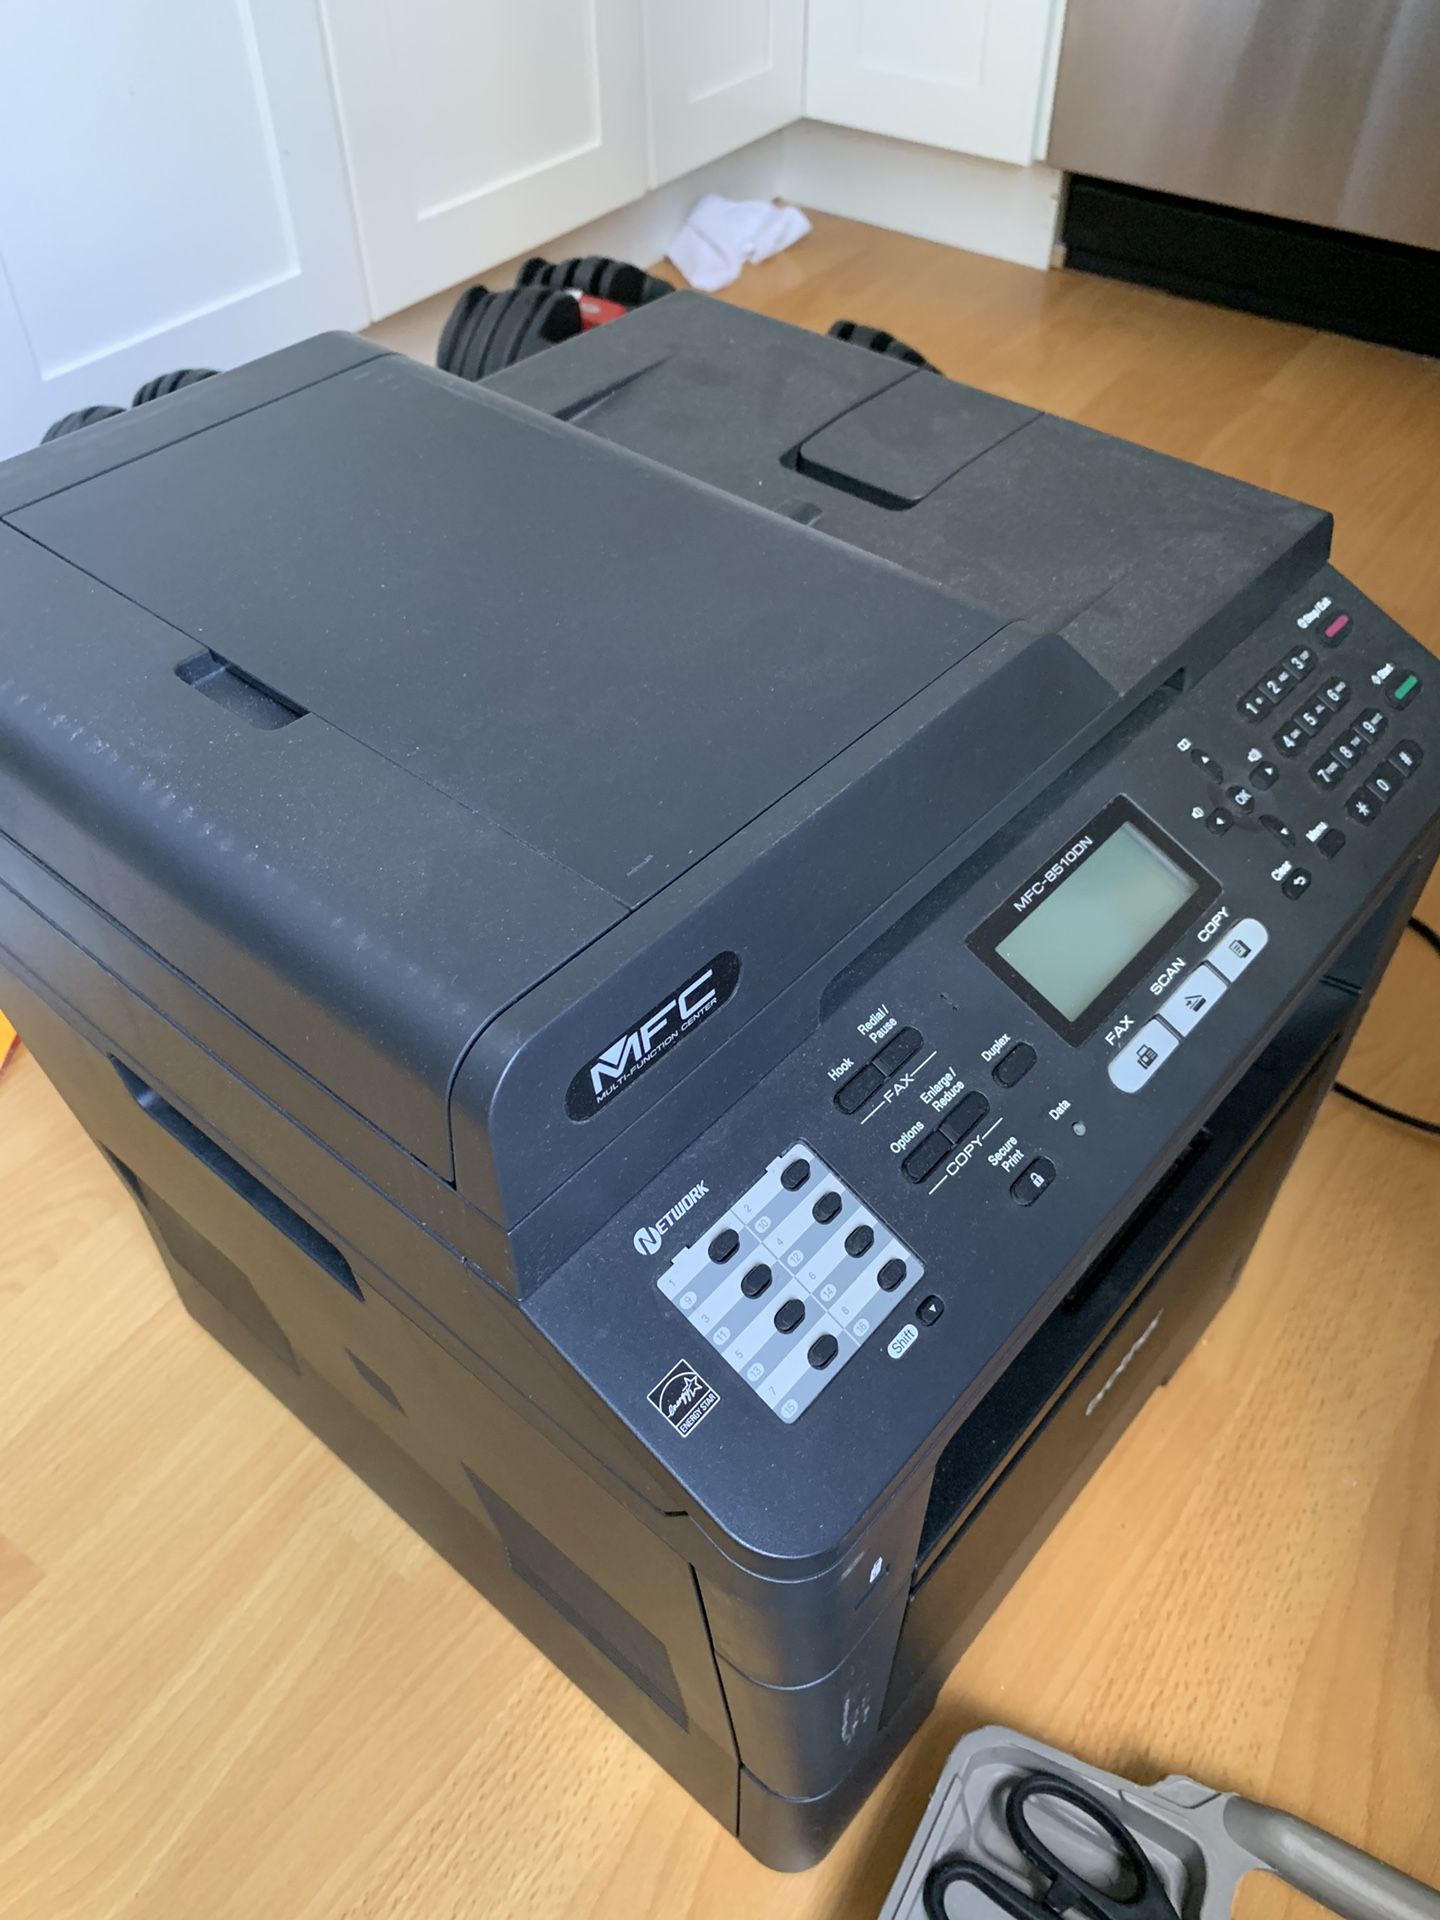 Printer fax scanner copier